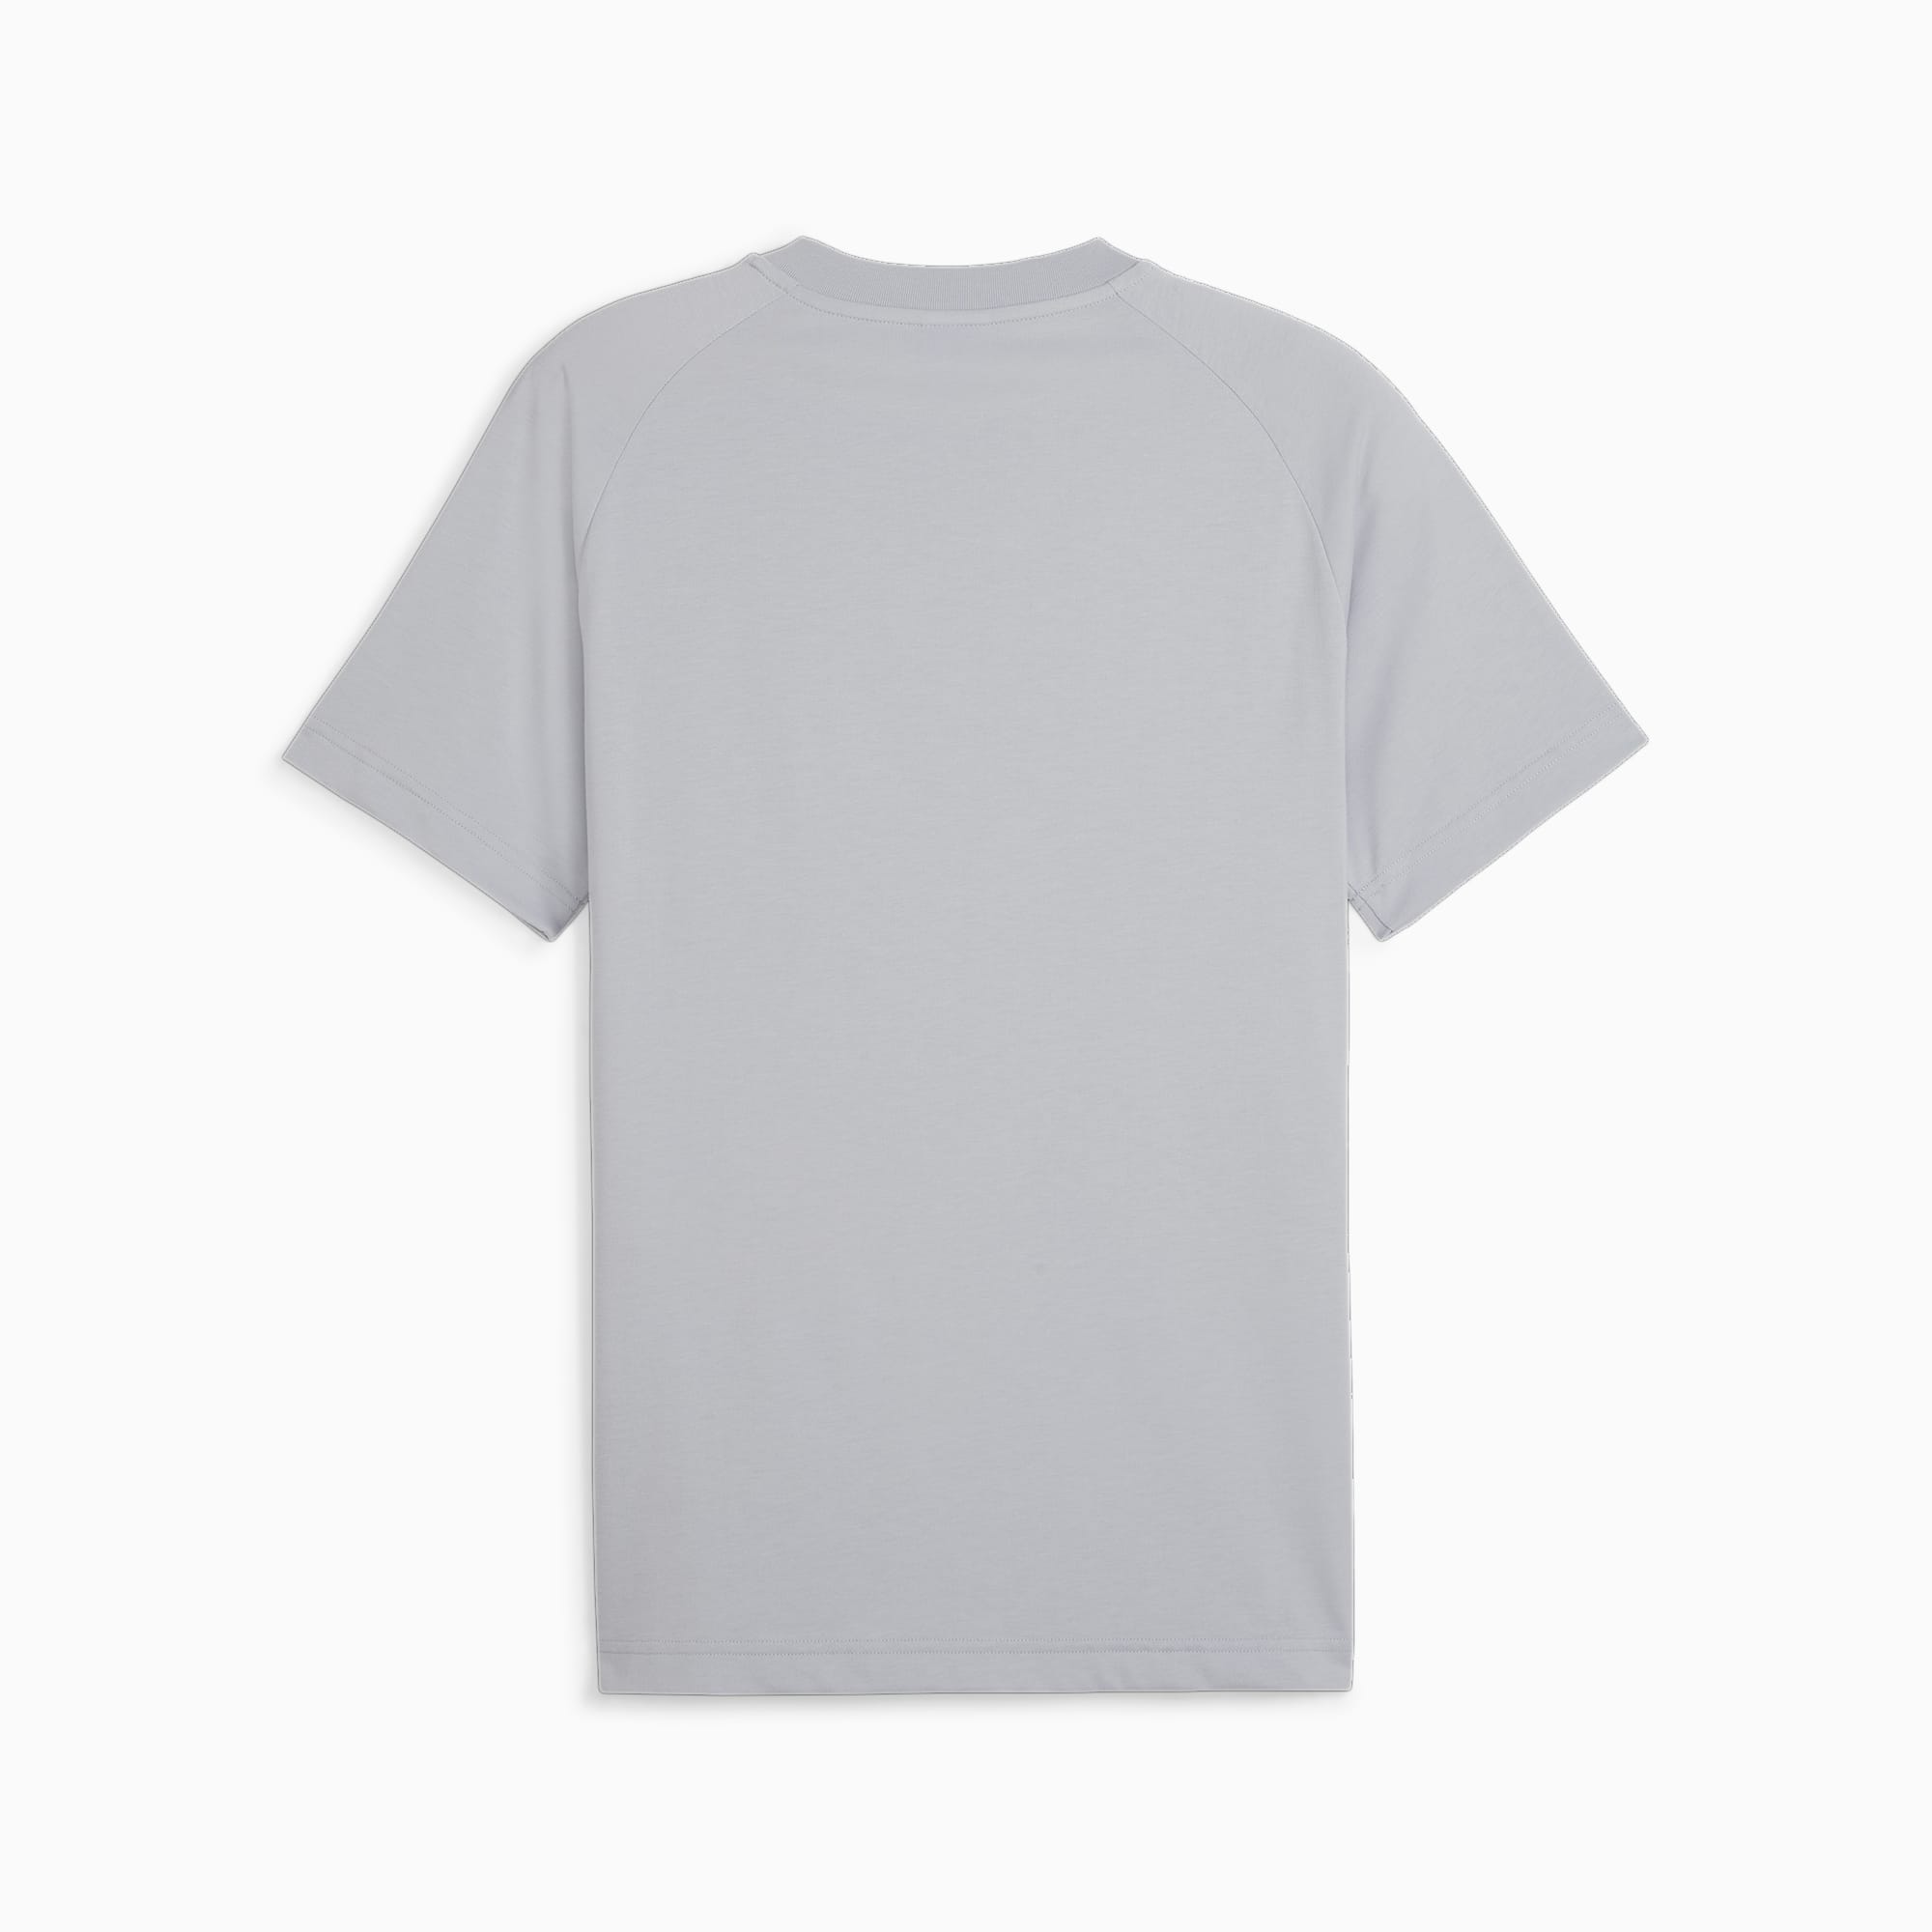 PUMATECH T-Shirt Mit Tasche Herren, Grau, Größe: M, Kleidung